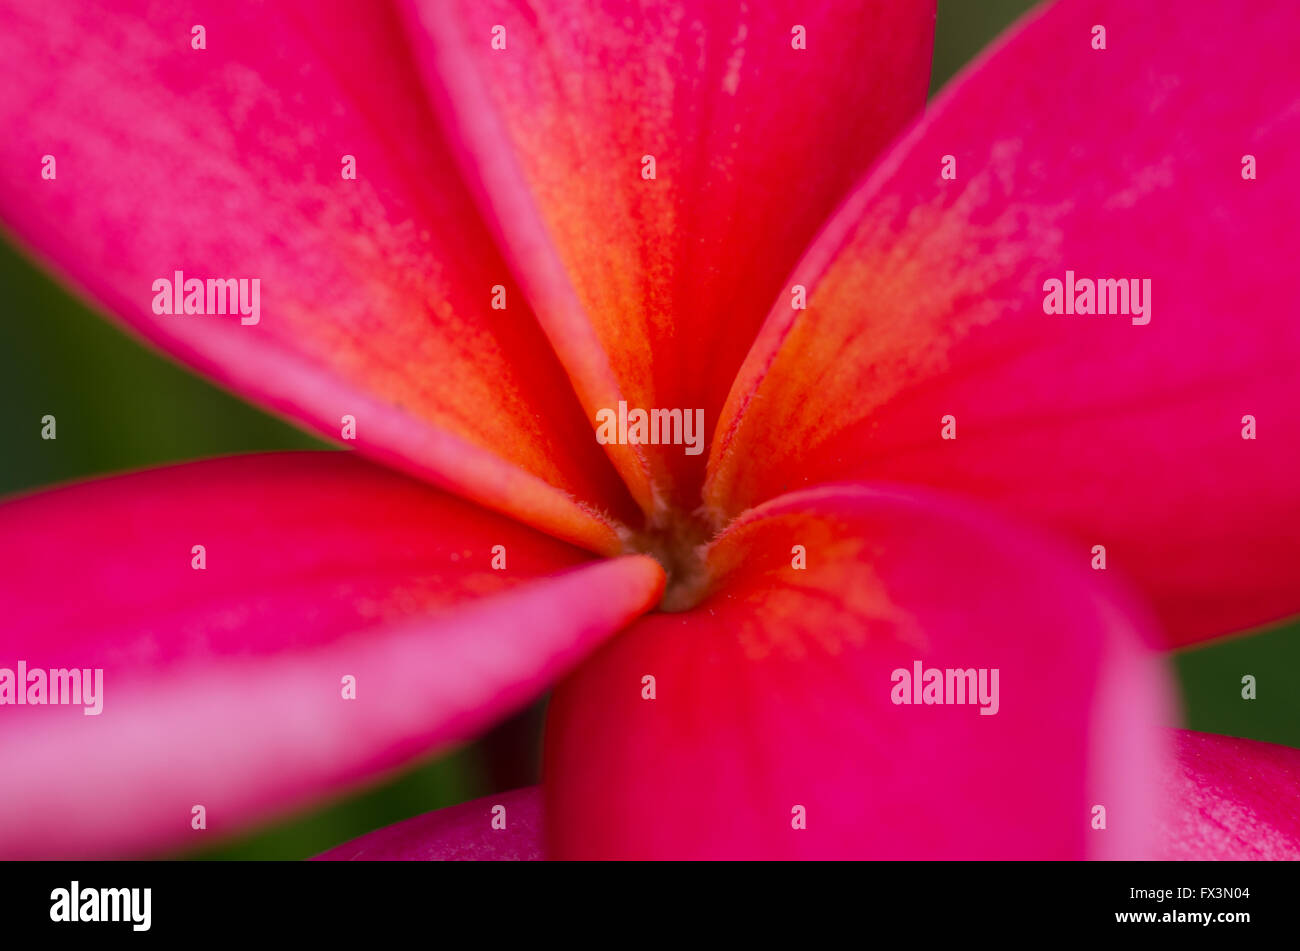 Pink frangipani petal close up Stock Photo